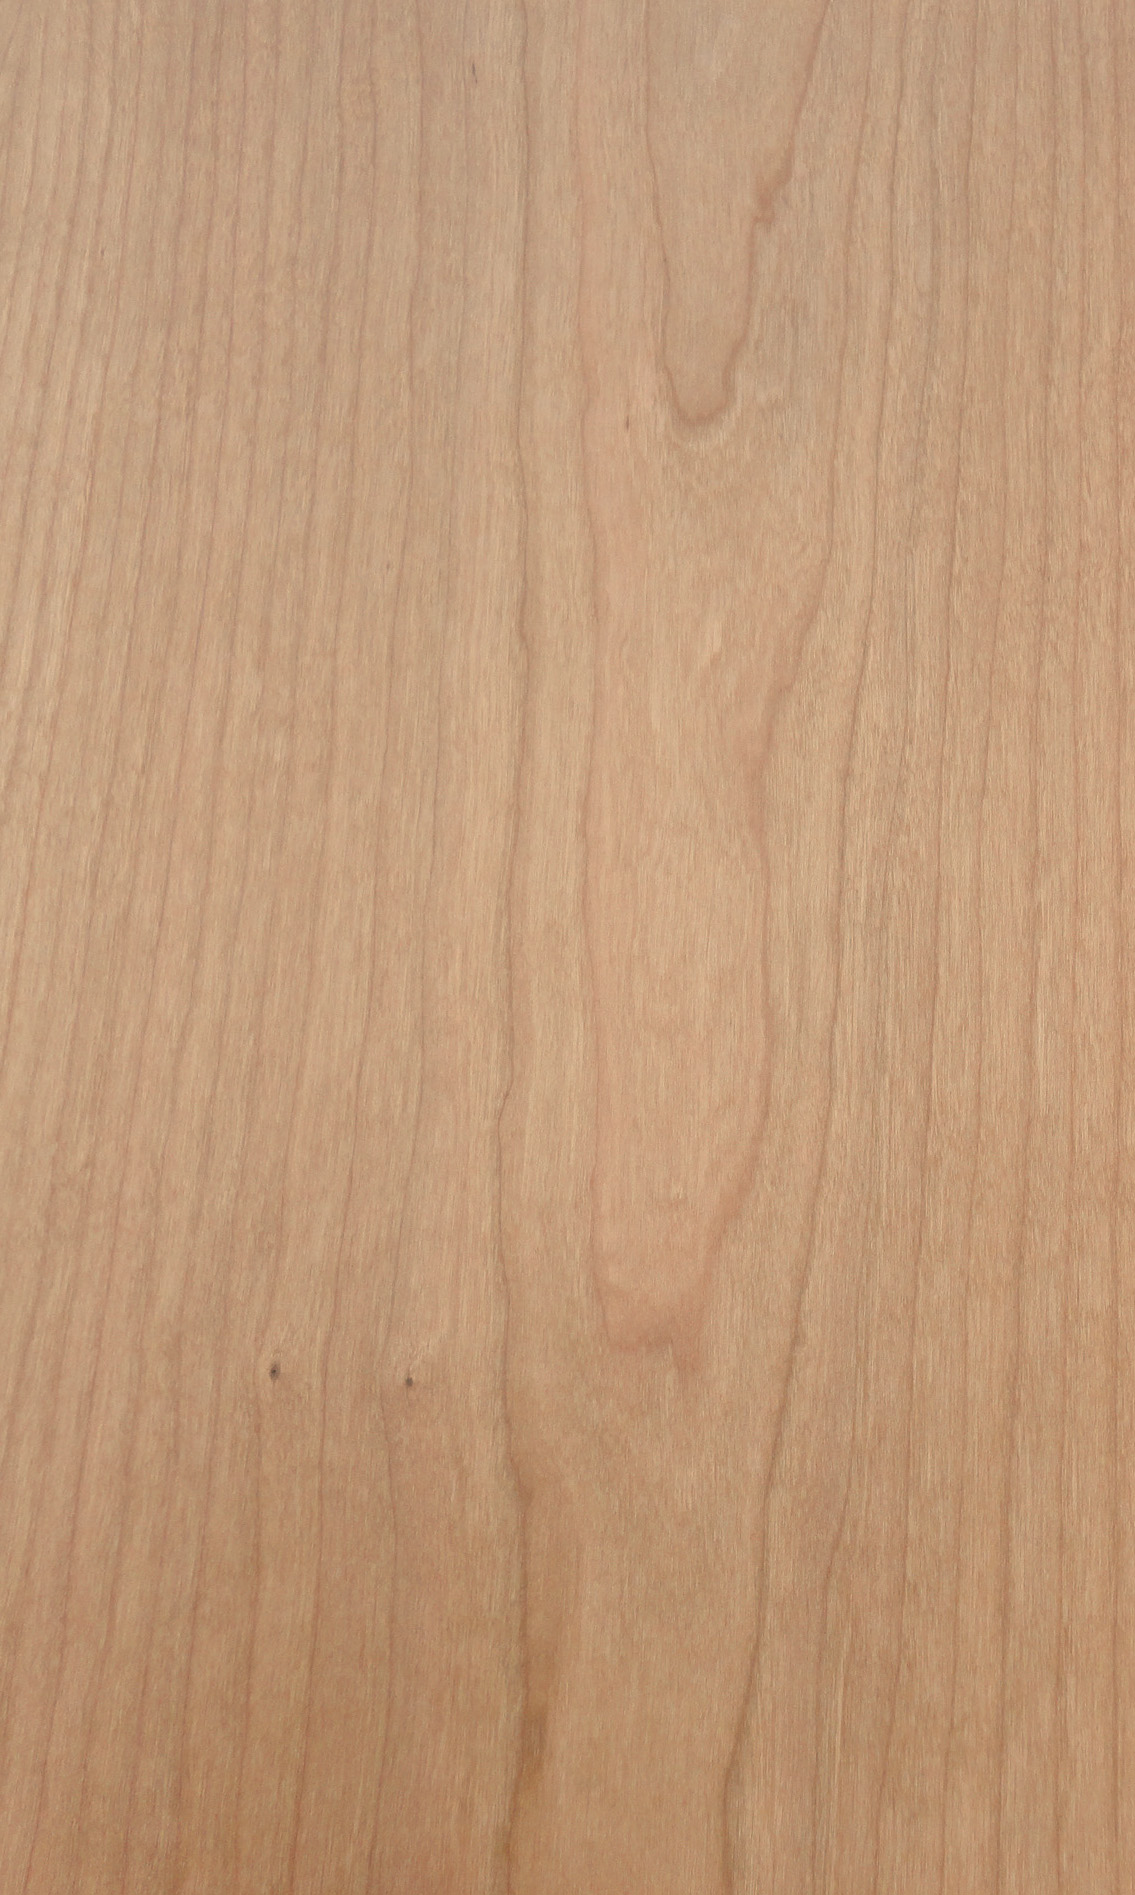 2.375" Cherry wood veneer edgebanding 2-3/8" x 120" with preglued adhesive 